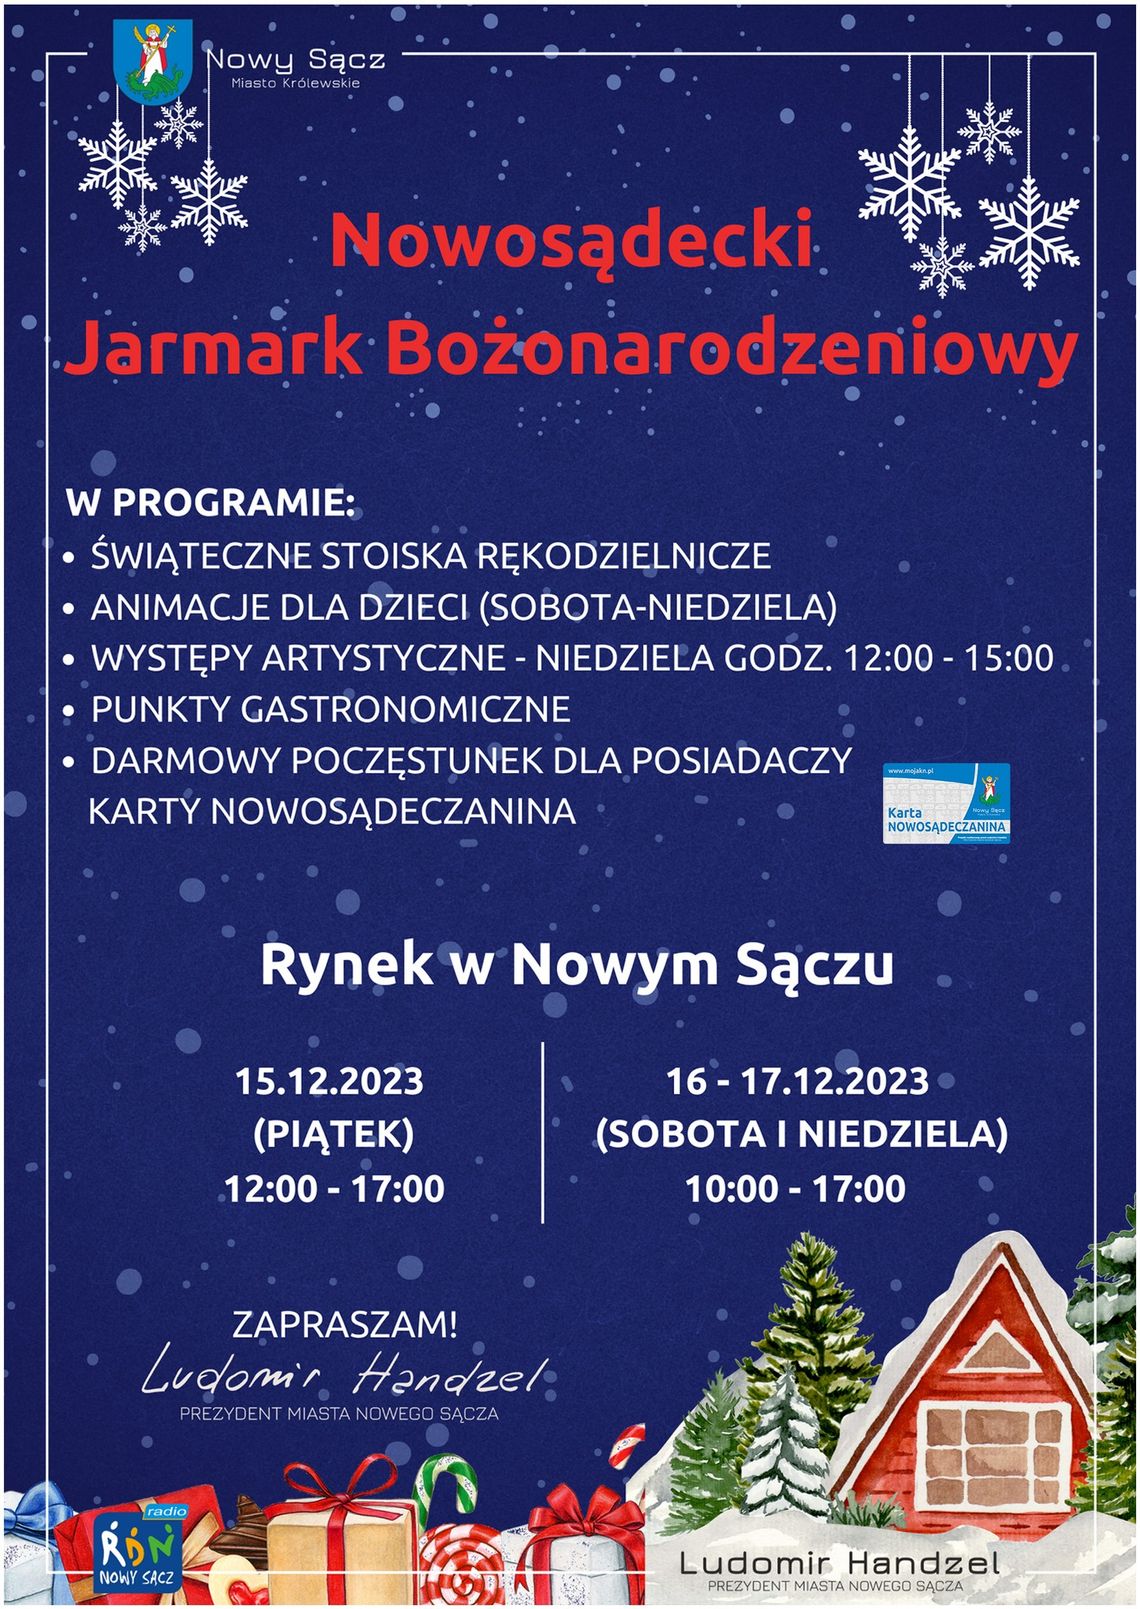 Nowosądecki Jarmark Bożonarodzeniowy | halogorlice.info